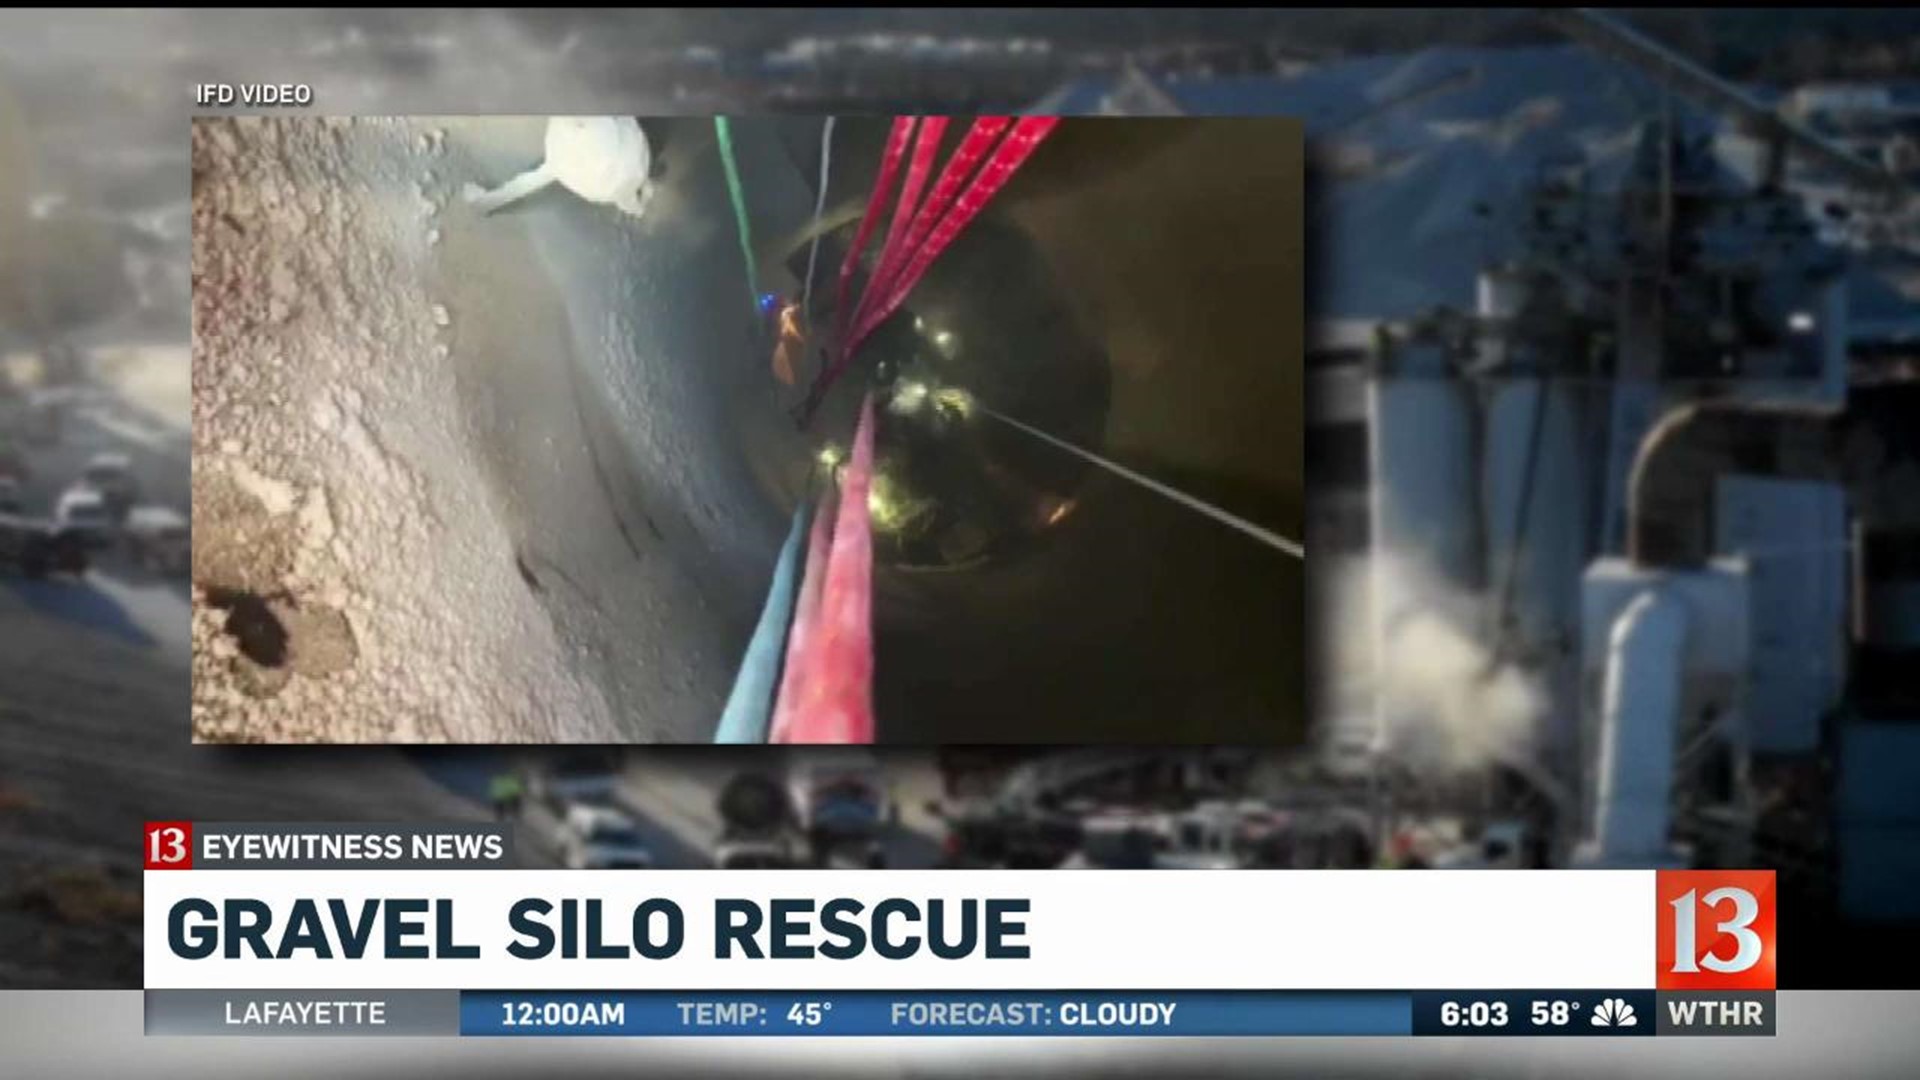 Silo rescue update